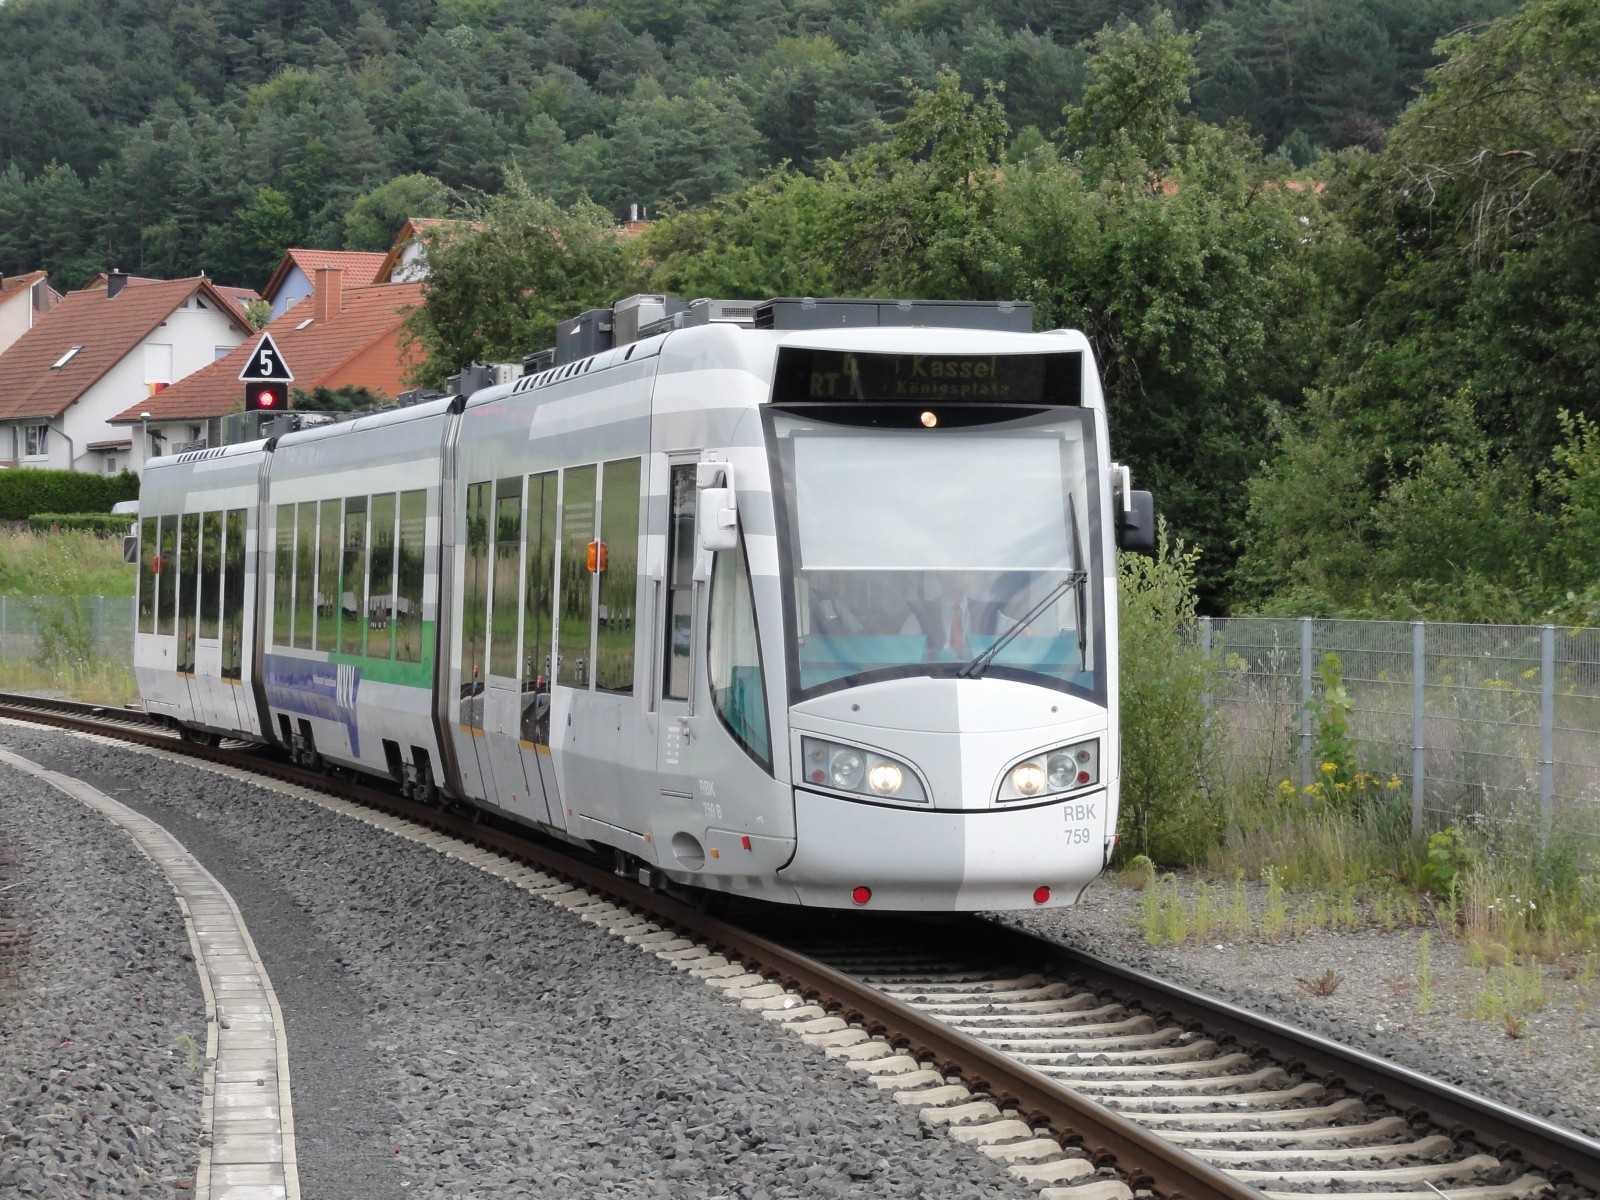 "RBK 755 tram-train approaching Wolfhagen" by Eastpath